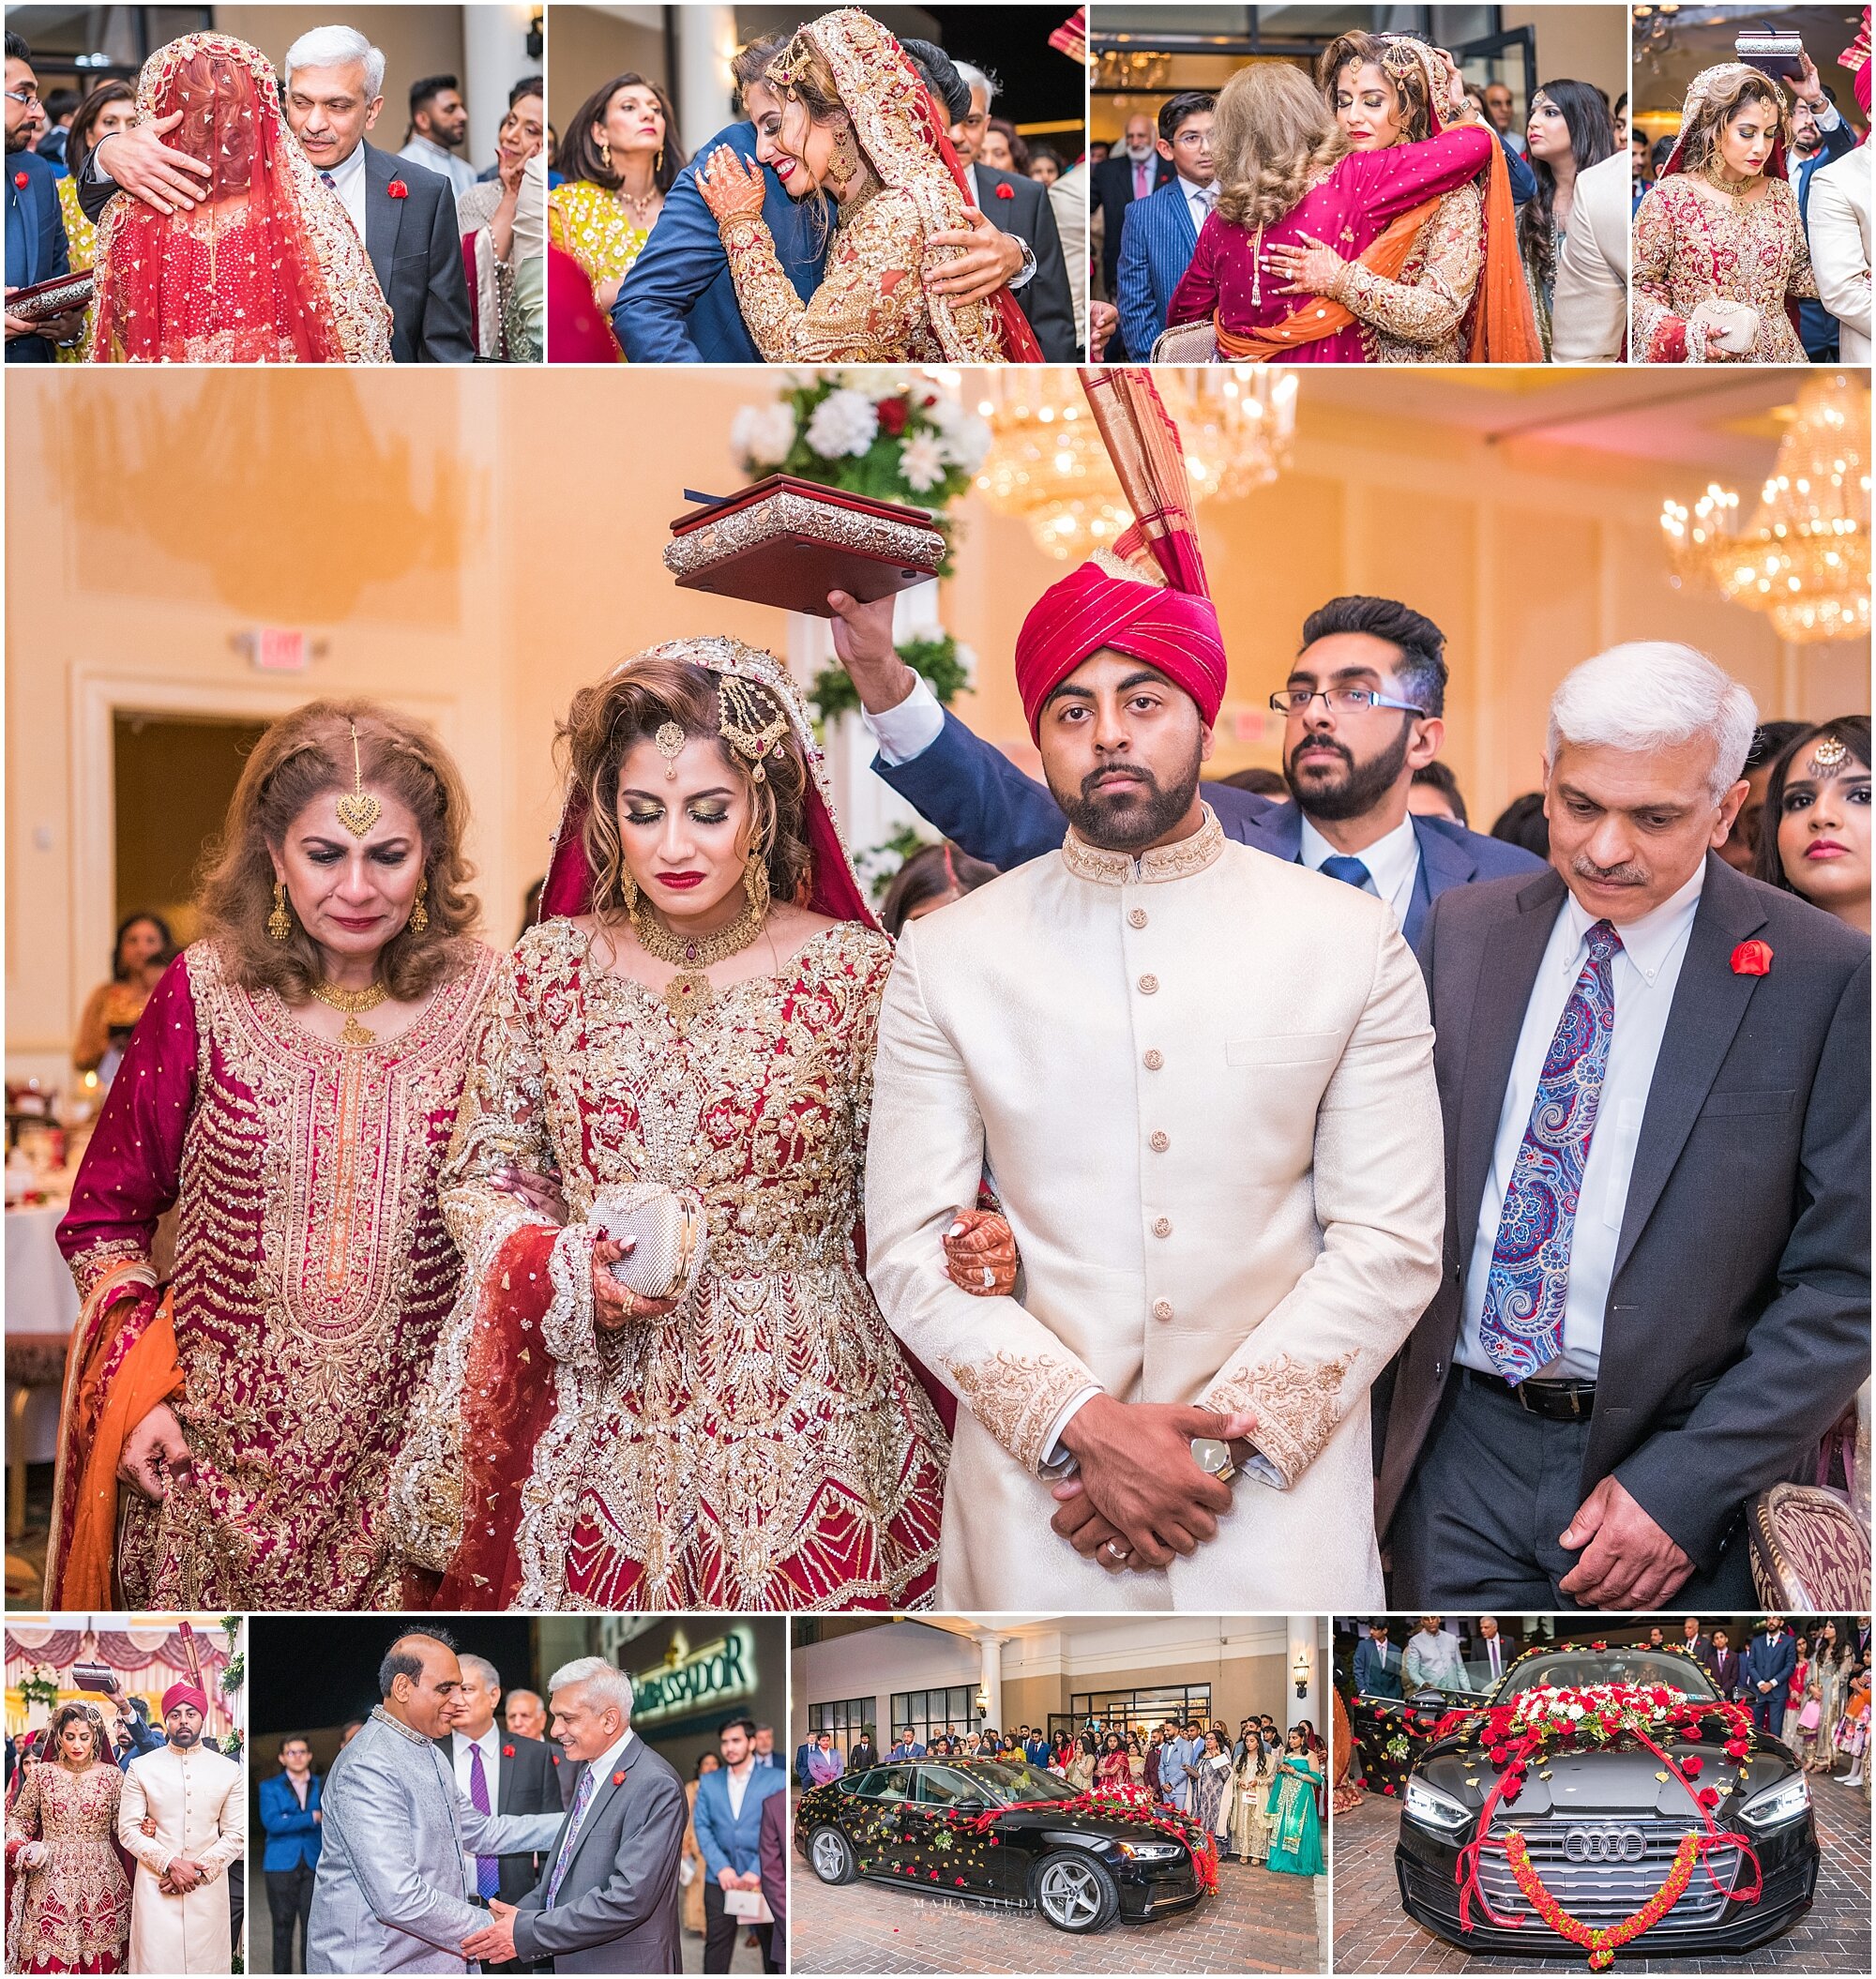 Ruhksati wedding photos photographed by Maha Studios